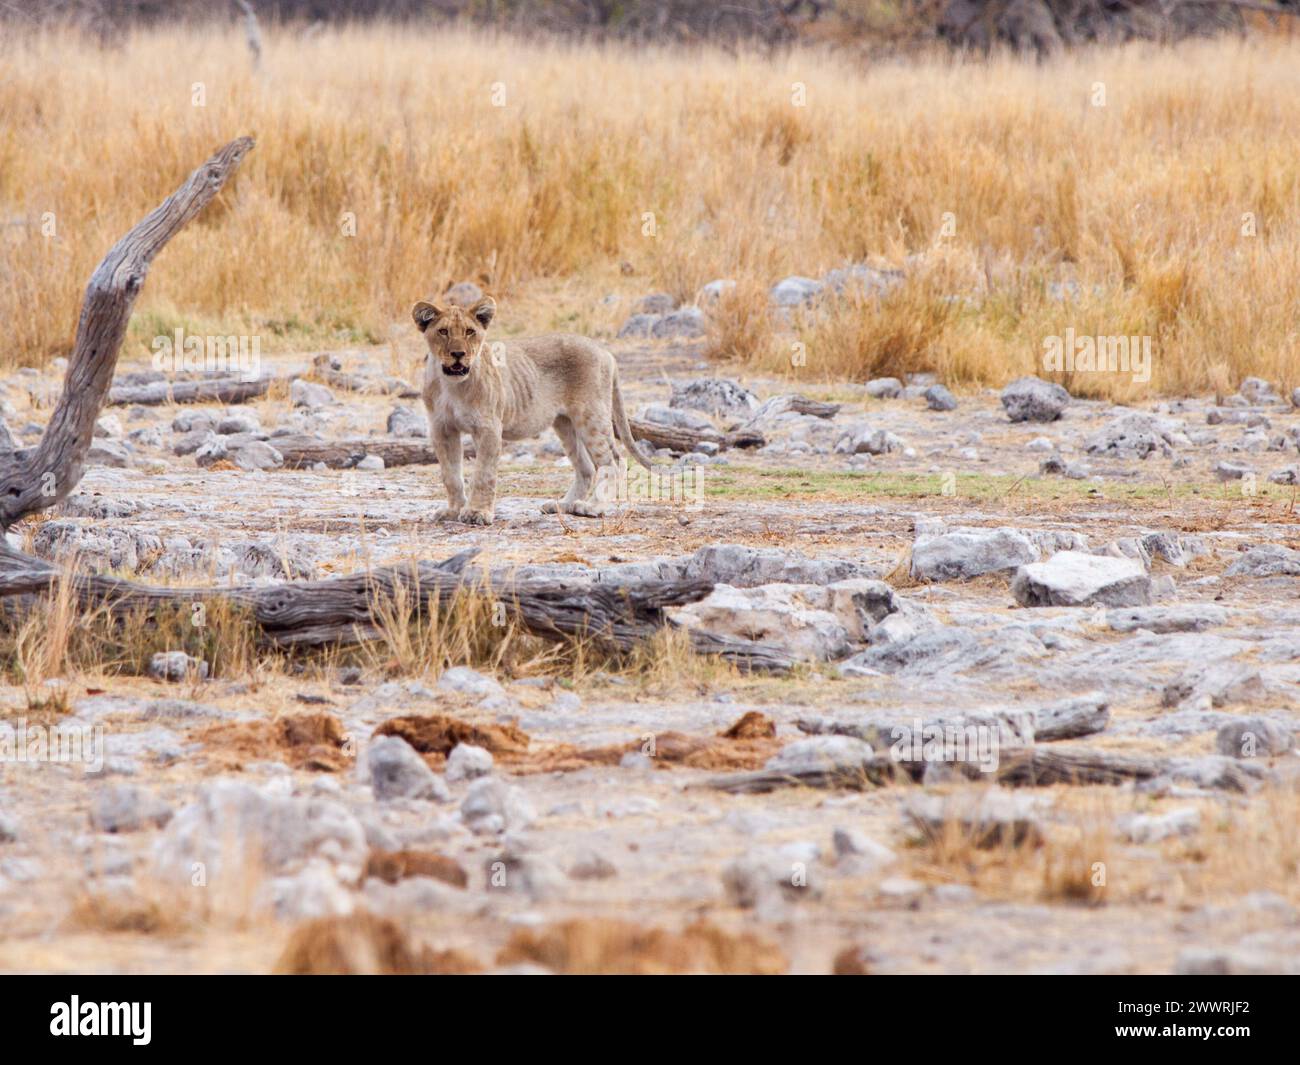 Solo giovane cucciolo di leone nel selvaggio habitat naturale, Etosha National Park, Namibia, Africa. Foto Stock